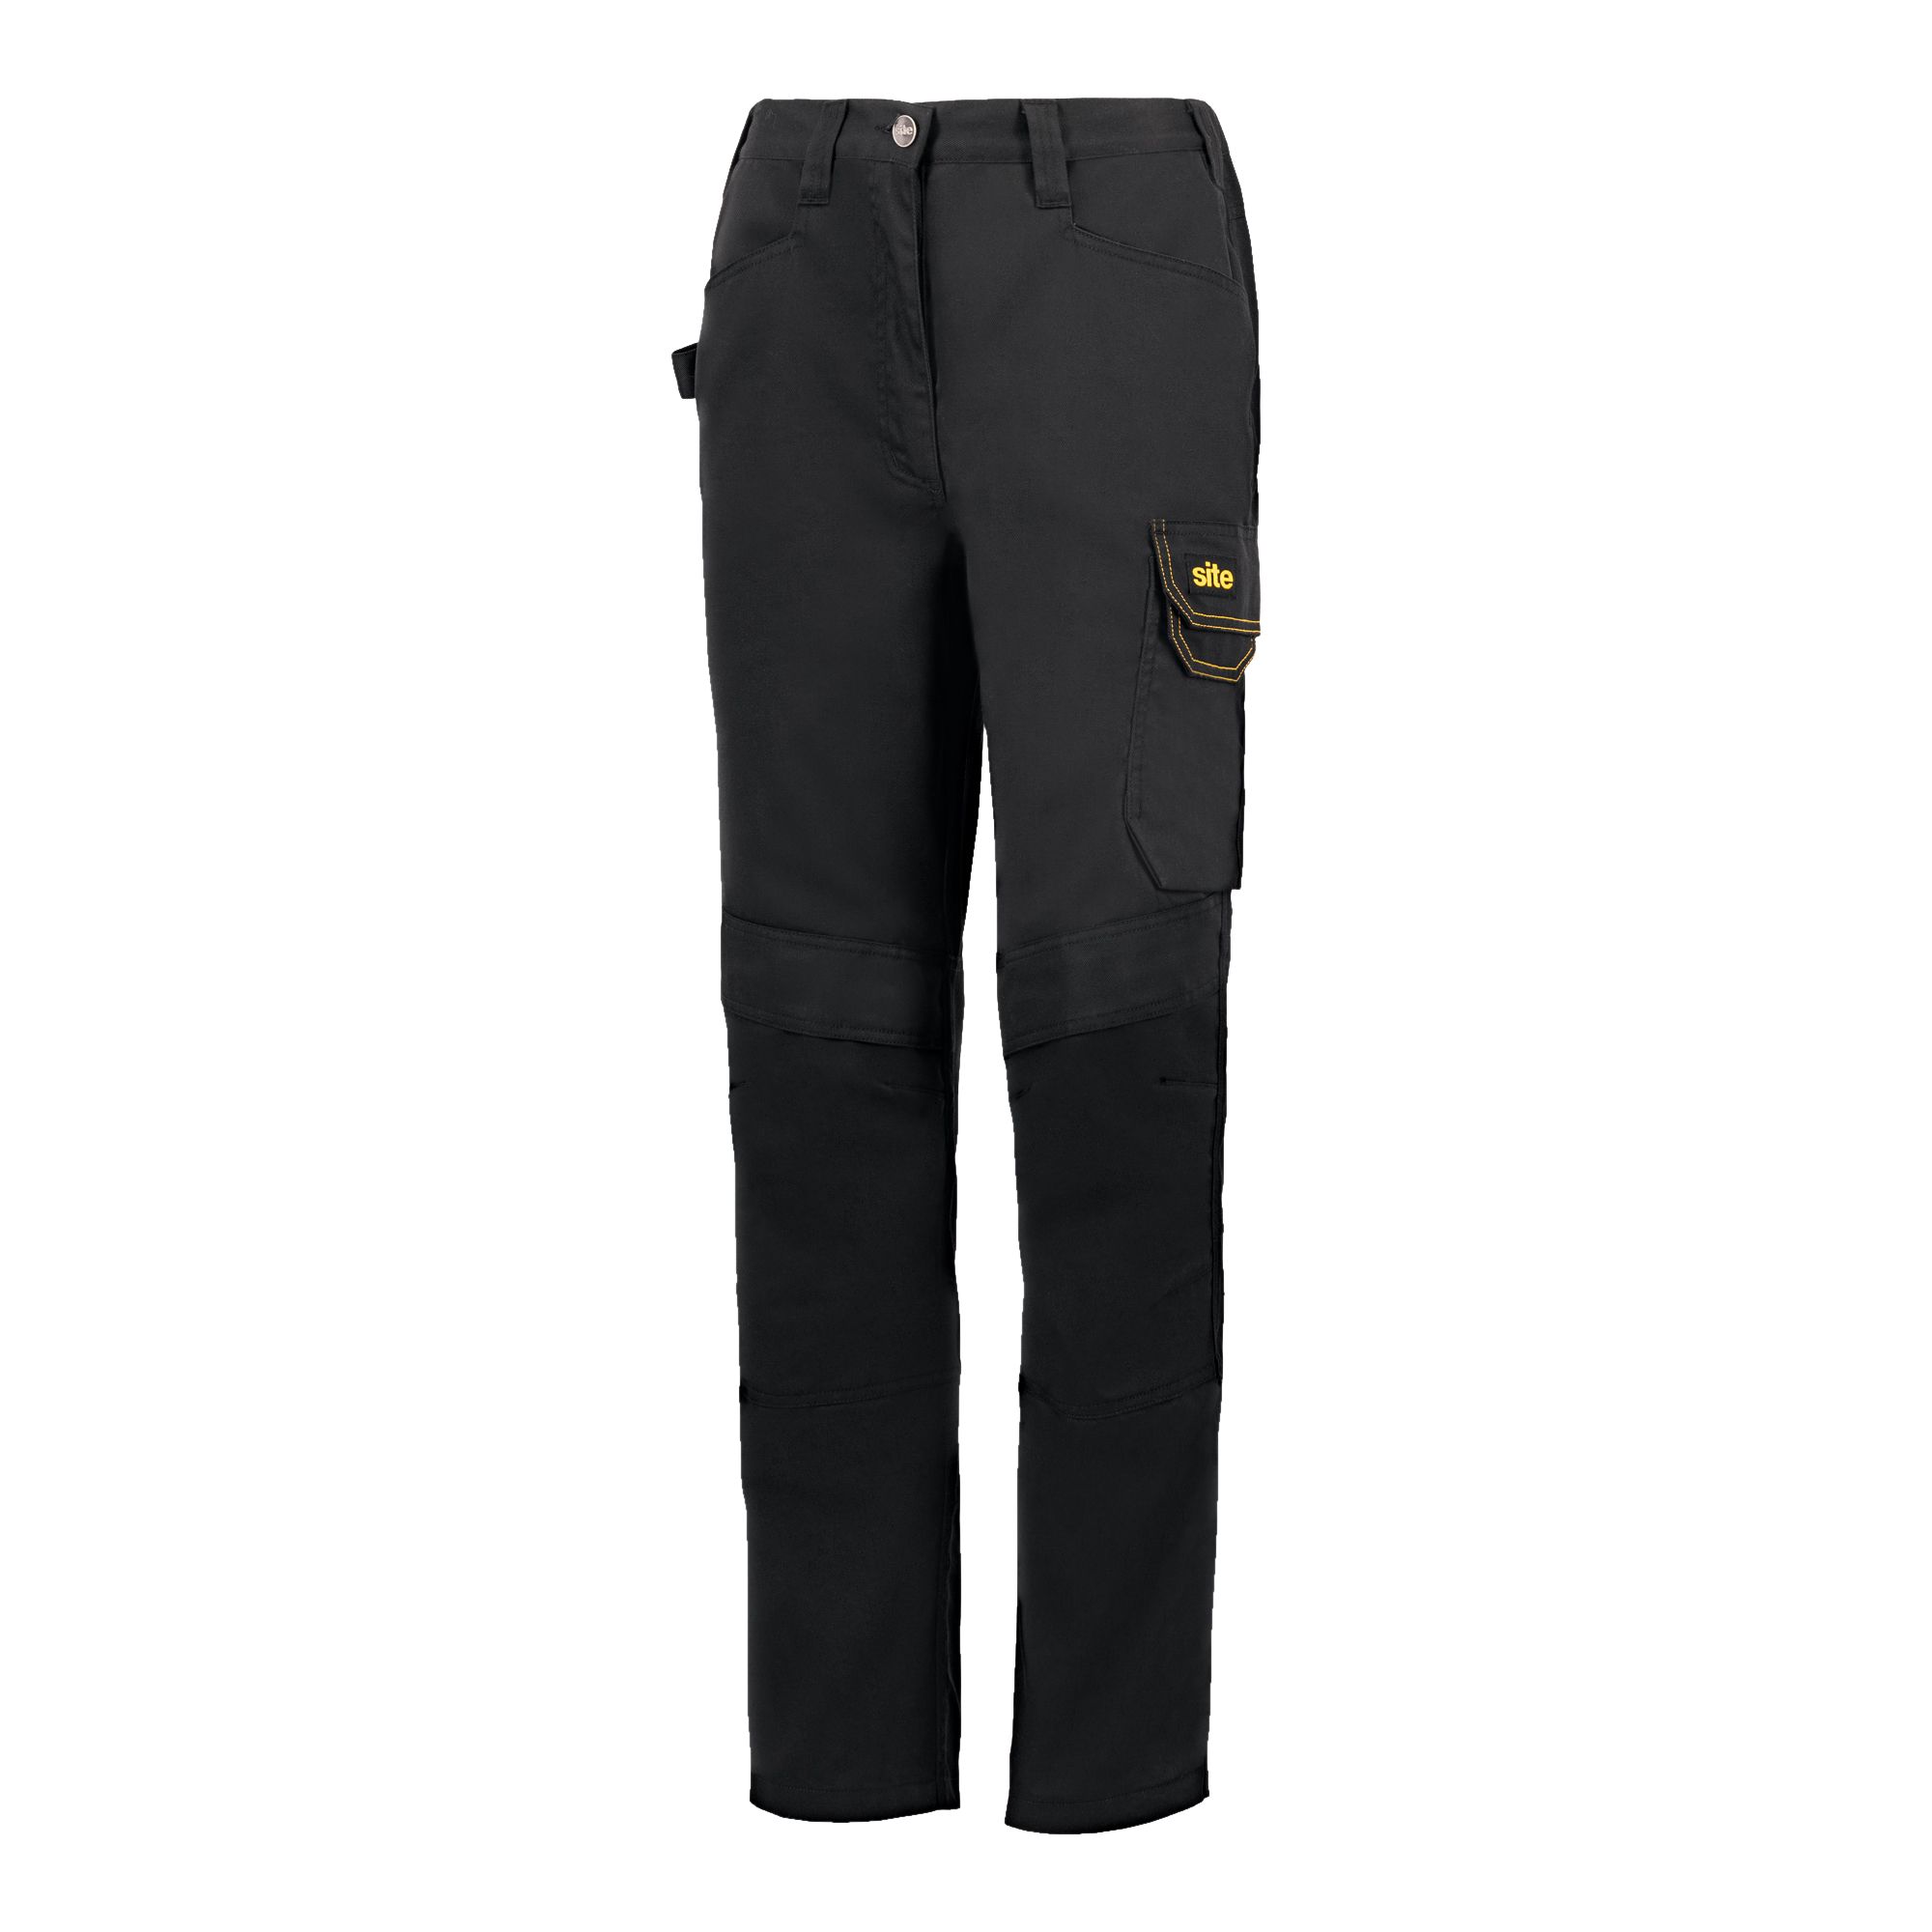 Black Ladies trousers, Size 16 L31